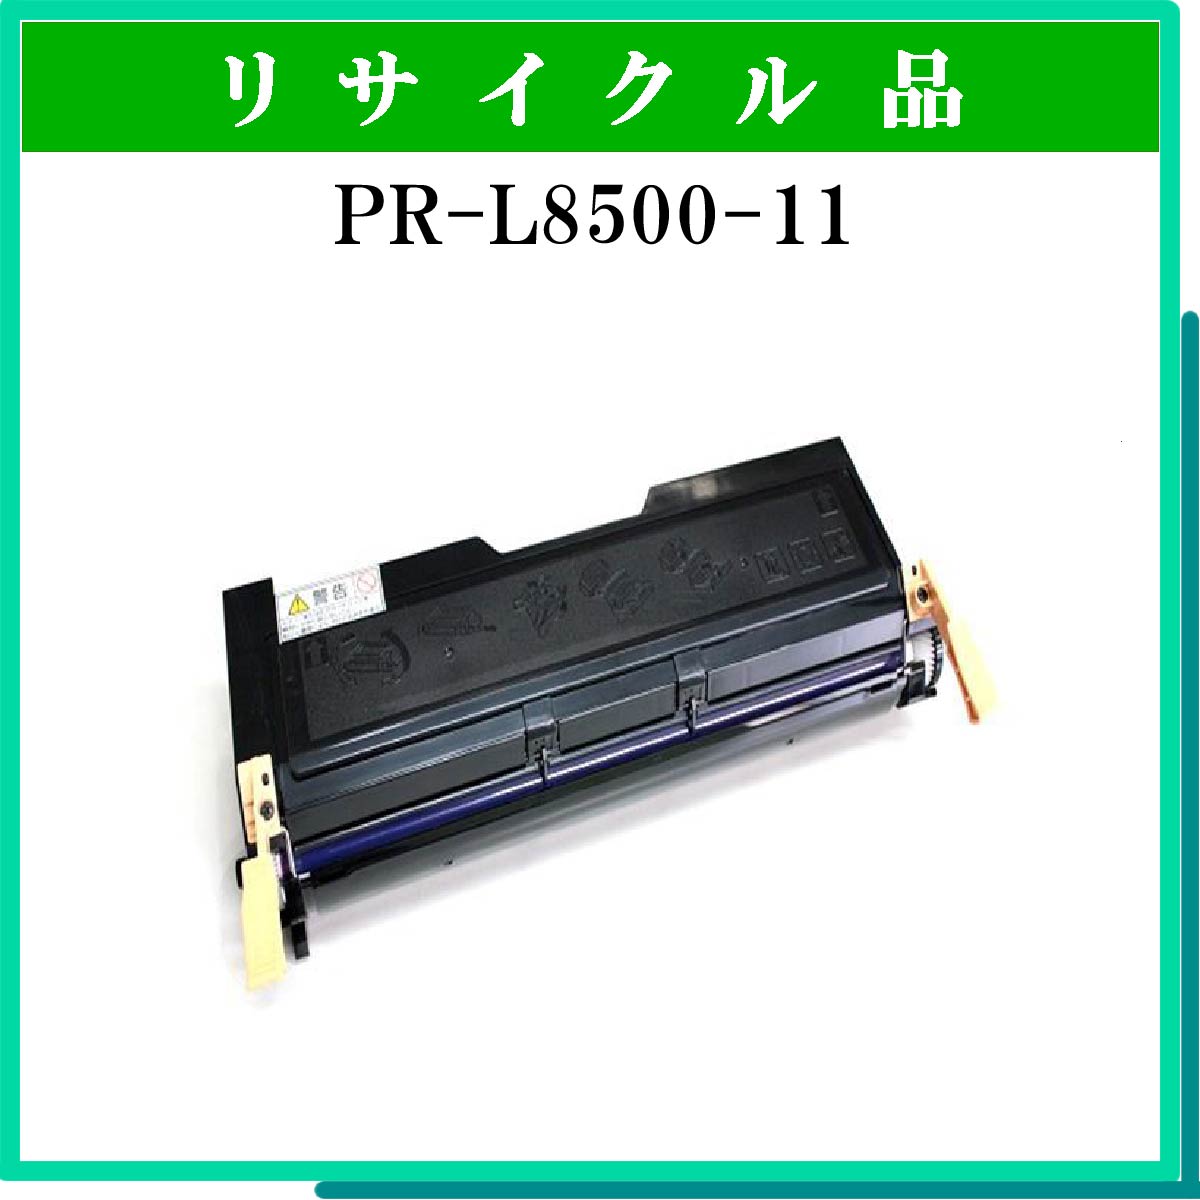 PR-L8500-11